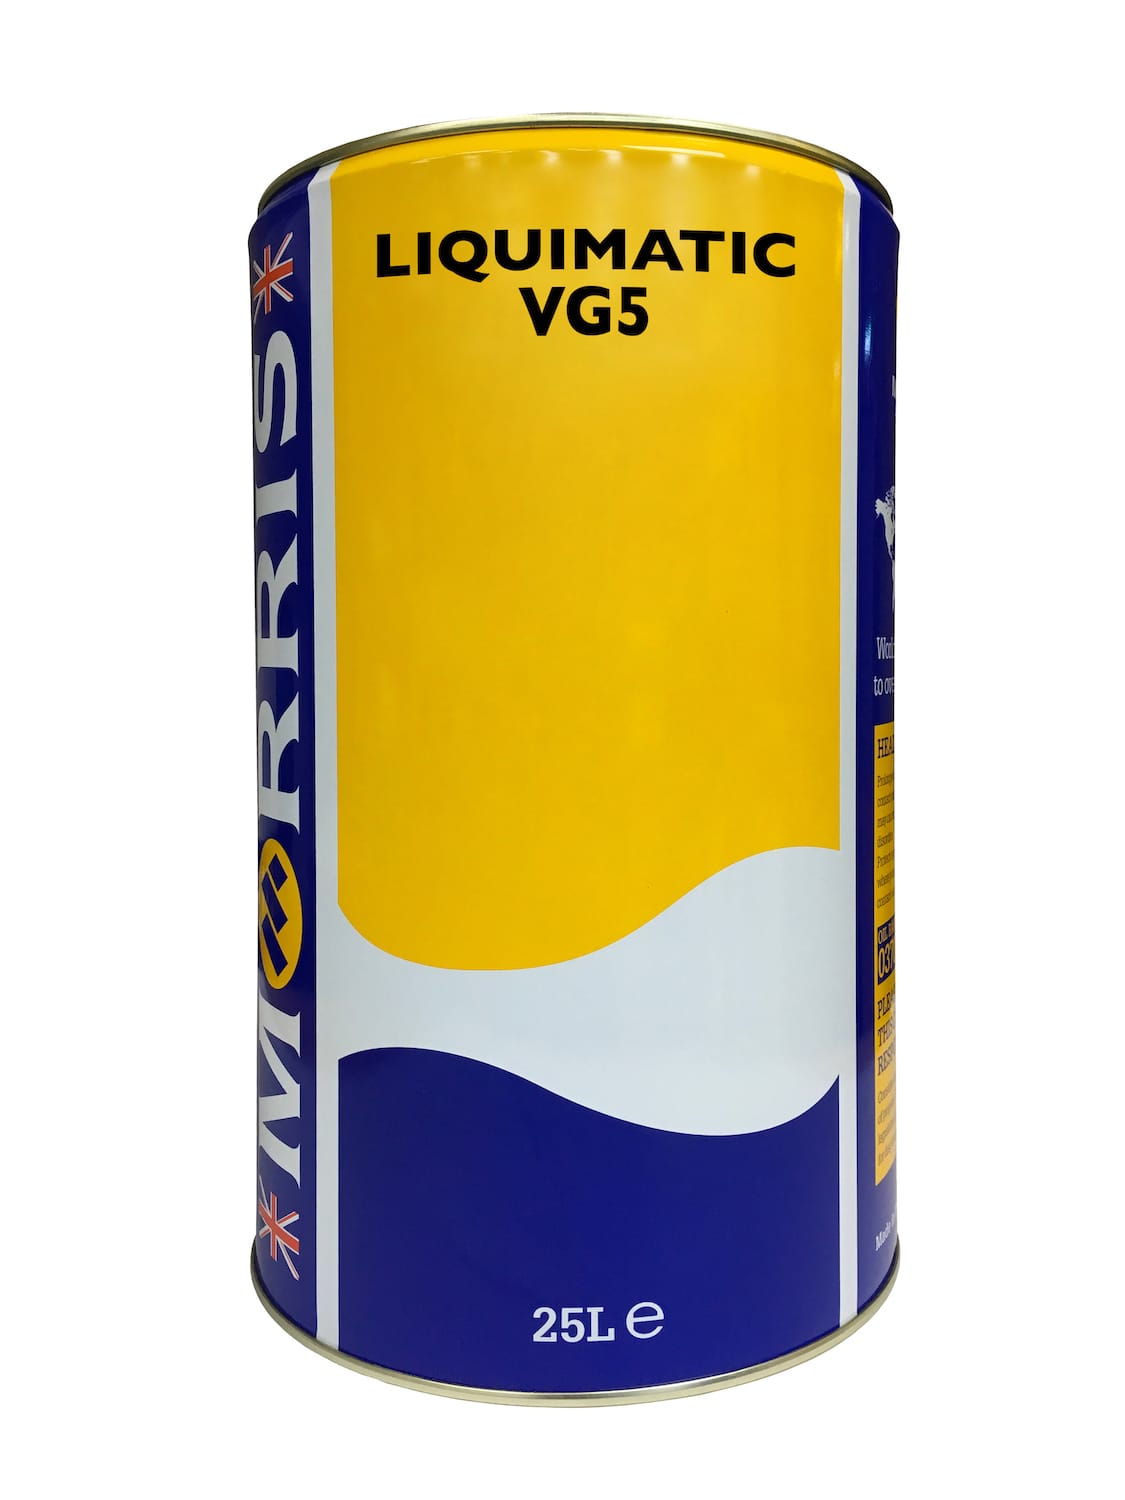 Liquimatic VG5